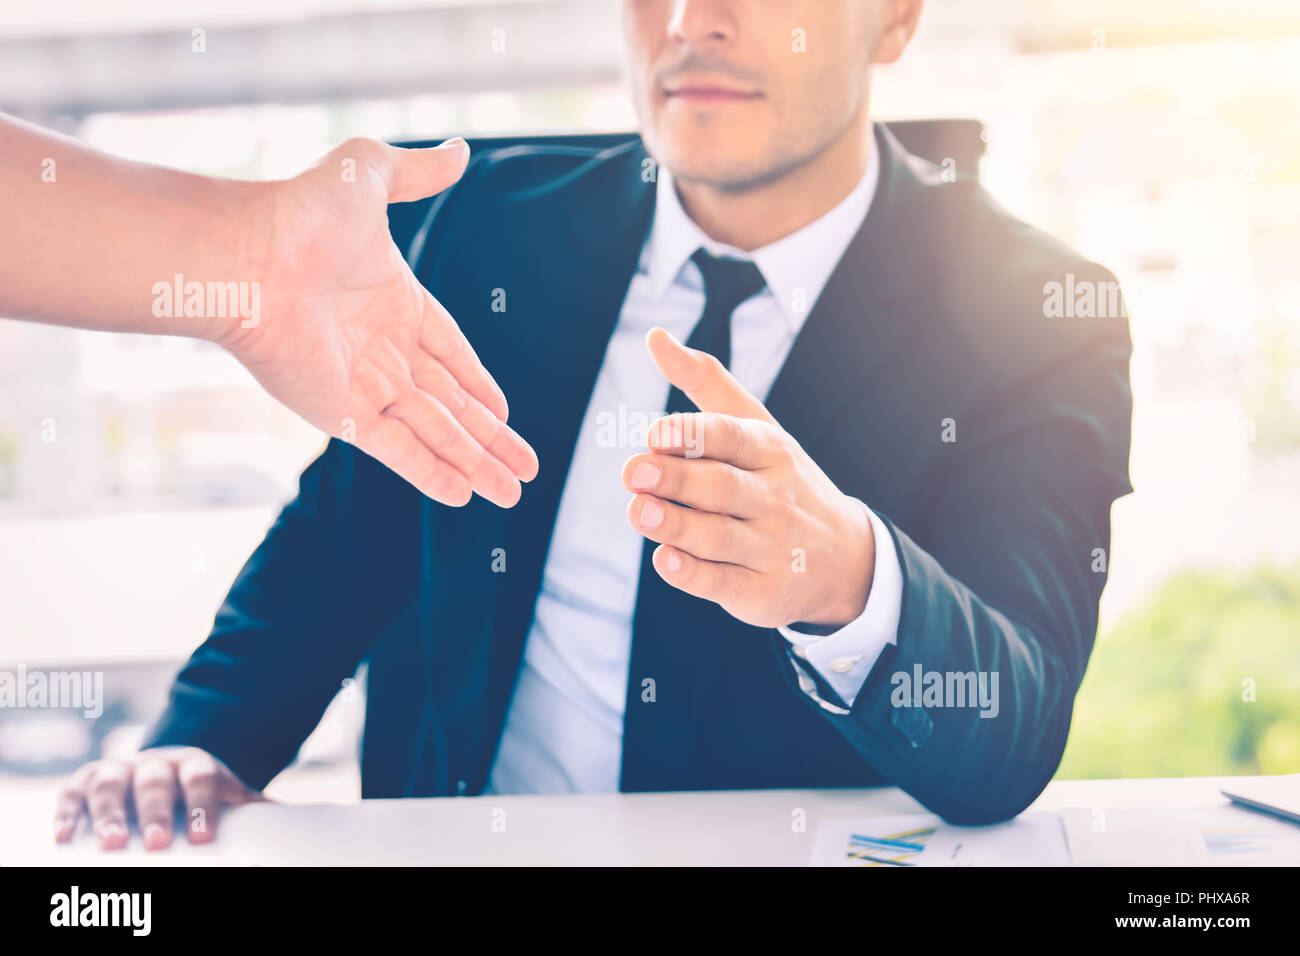 Hombre de negocios dando su mano para el apretón de manos al partner , asociación o tratar con éxito el concepto del trabajo en equipo Foto de stock